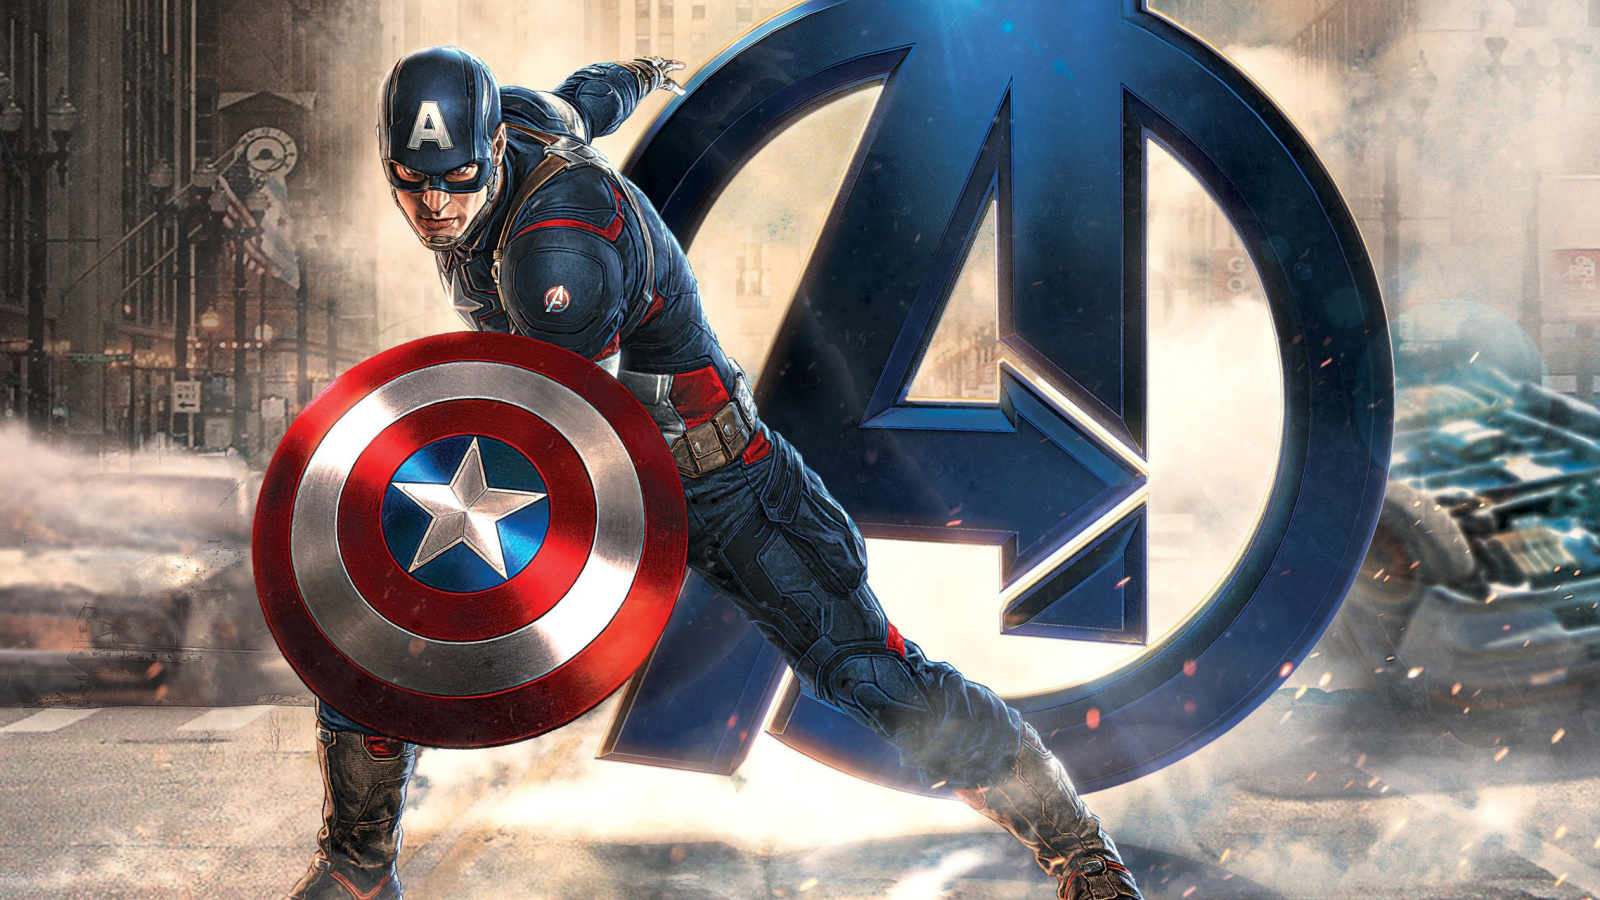 Captain America Marvel Avengers wallpaper 1600x900